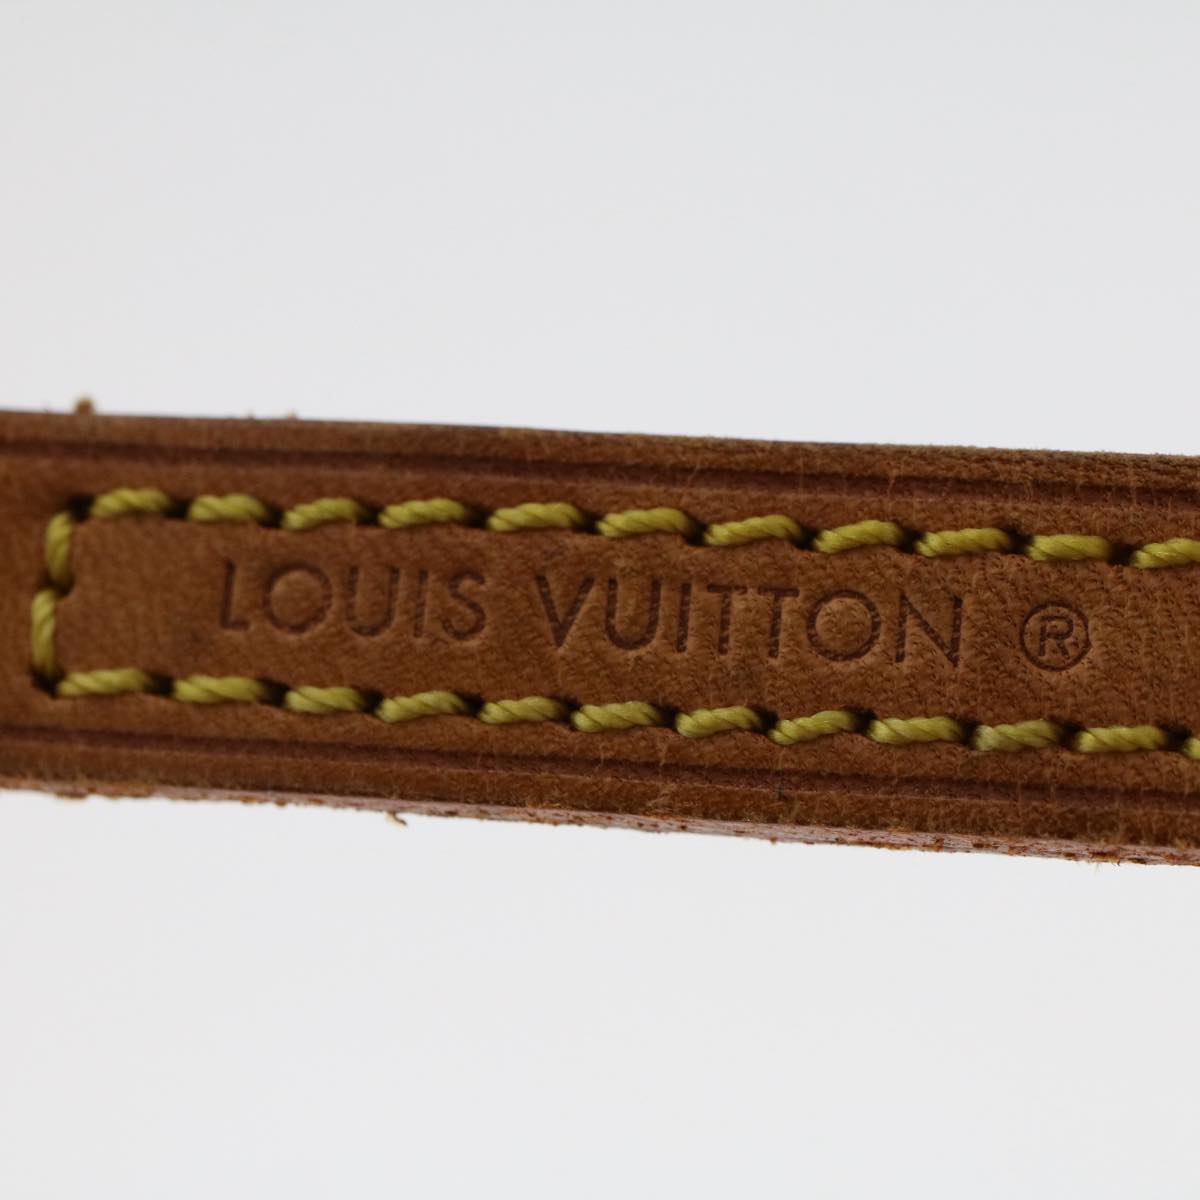 LOUIS VUITTON Shoulder Strap Leather 44.5"" Beige LV Auth 50013